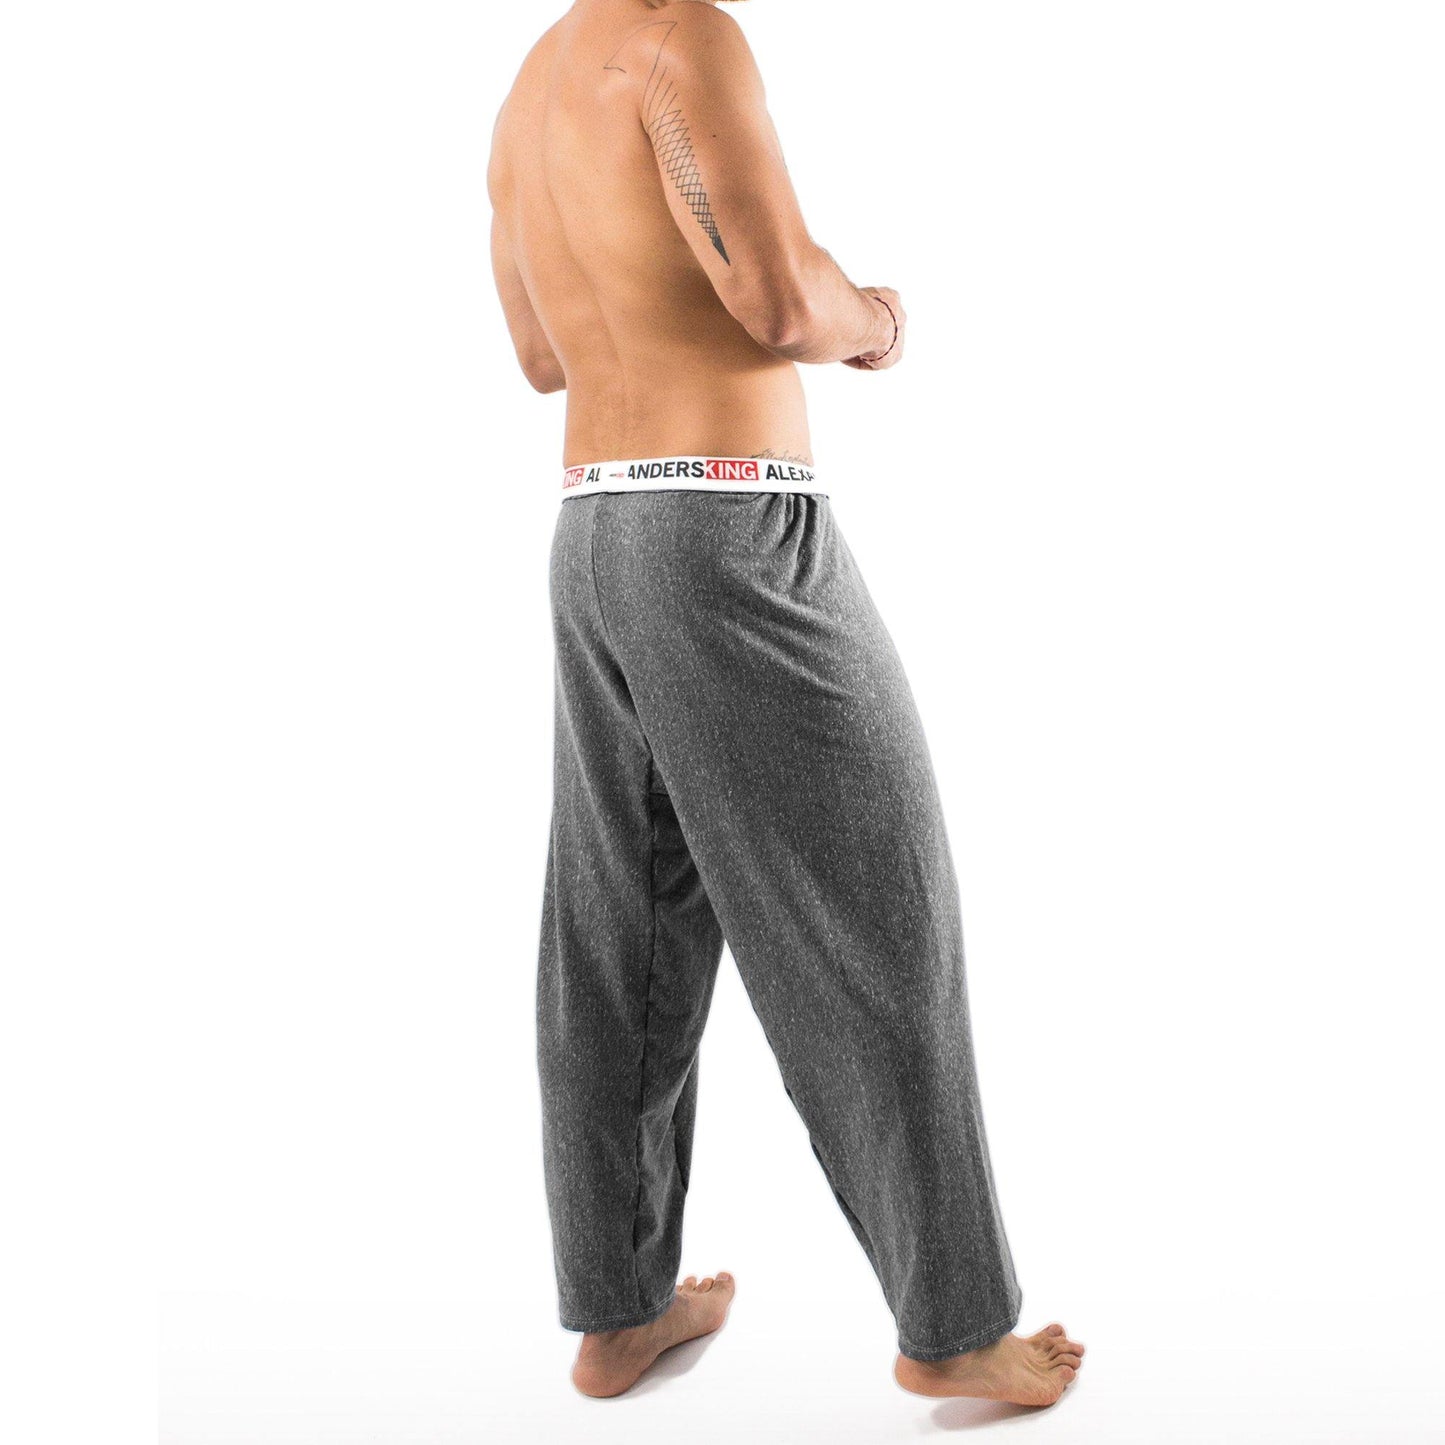 PP0001- PantalÌ?n Pijama Peace - AlexandersKing Underwear